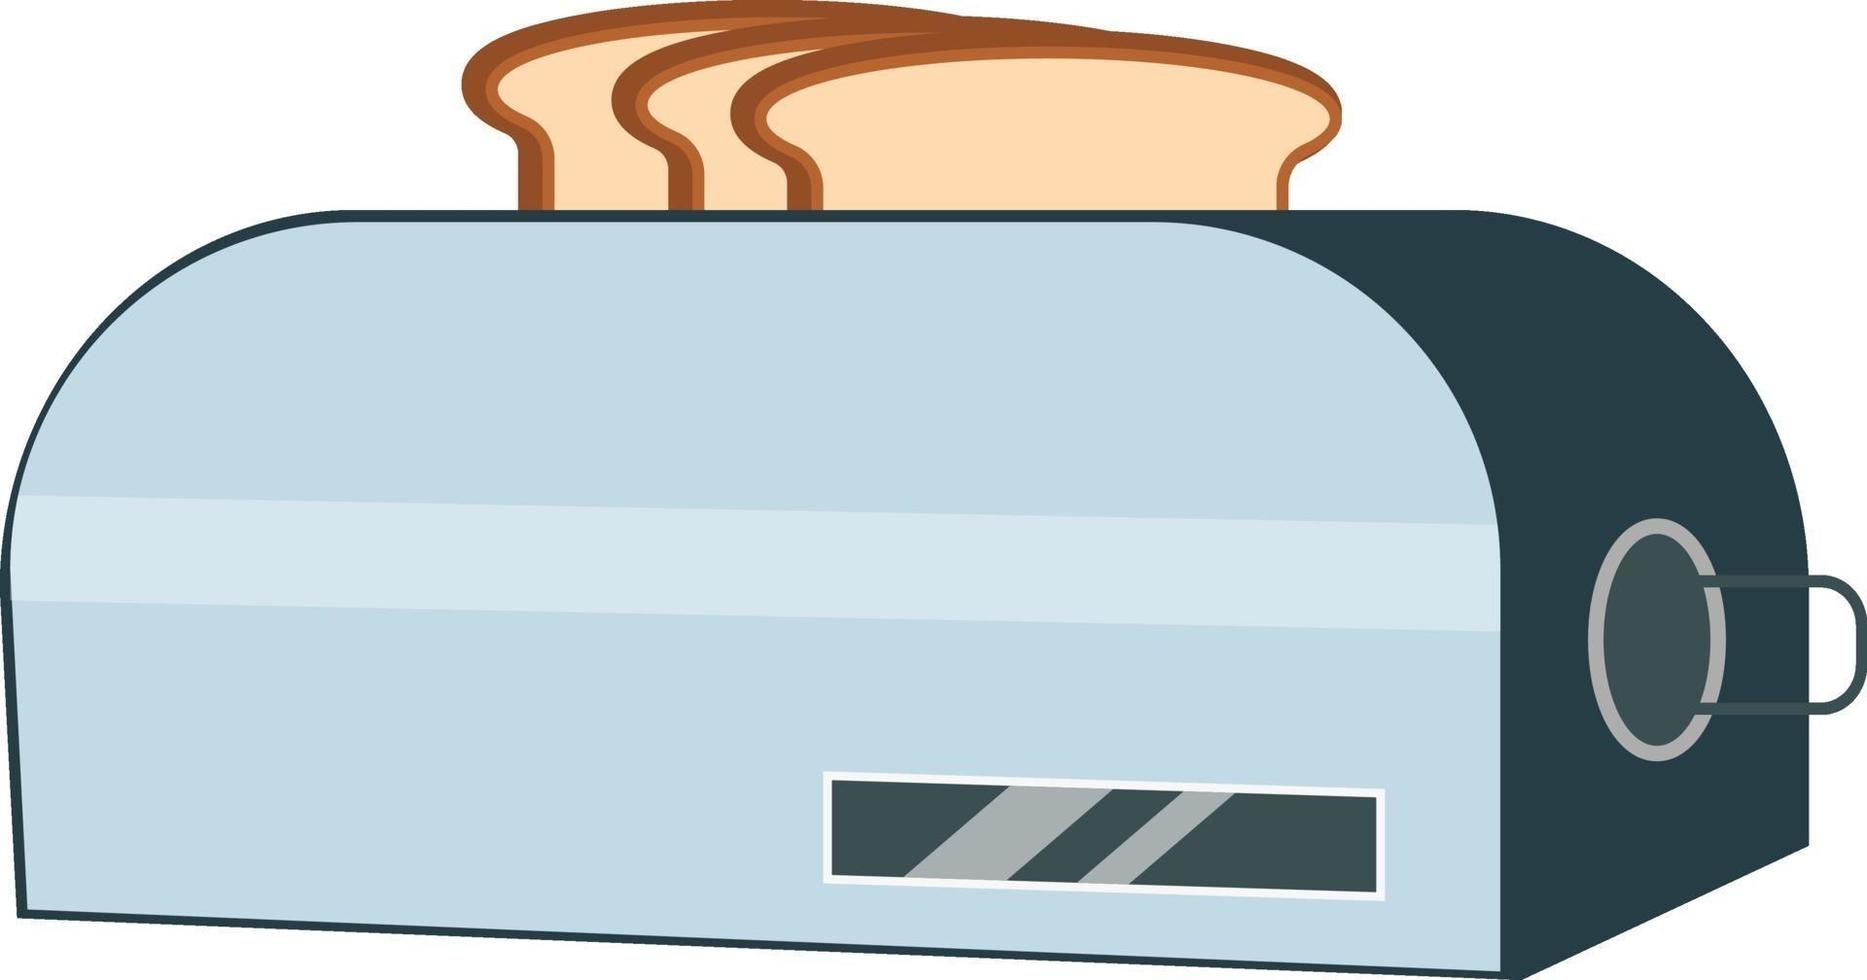 bröd brödrost, illustration, vektor på en vit bakgrund.